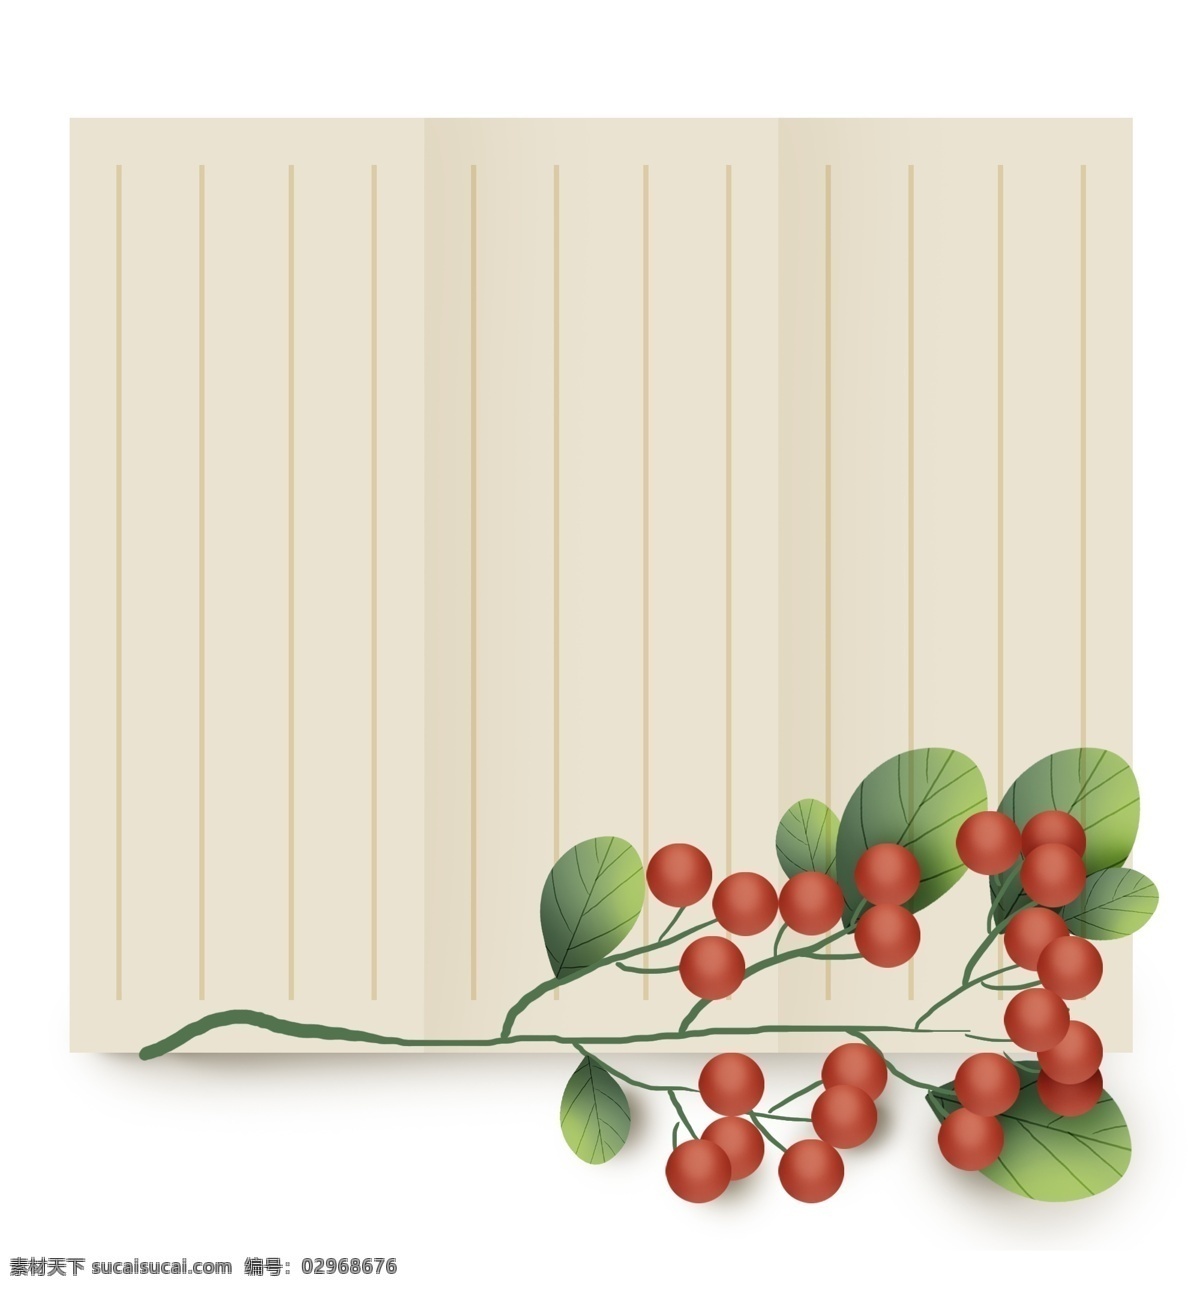 古风 植物 中式 文字 框 春季 山里红 春天标题框 果实 绿色 对话框 春天文字框 叶子 水果 立体